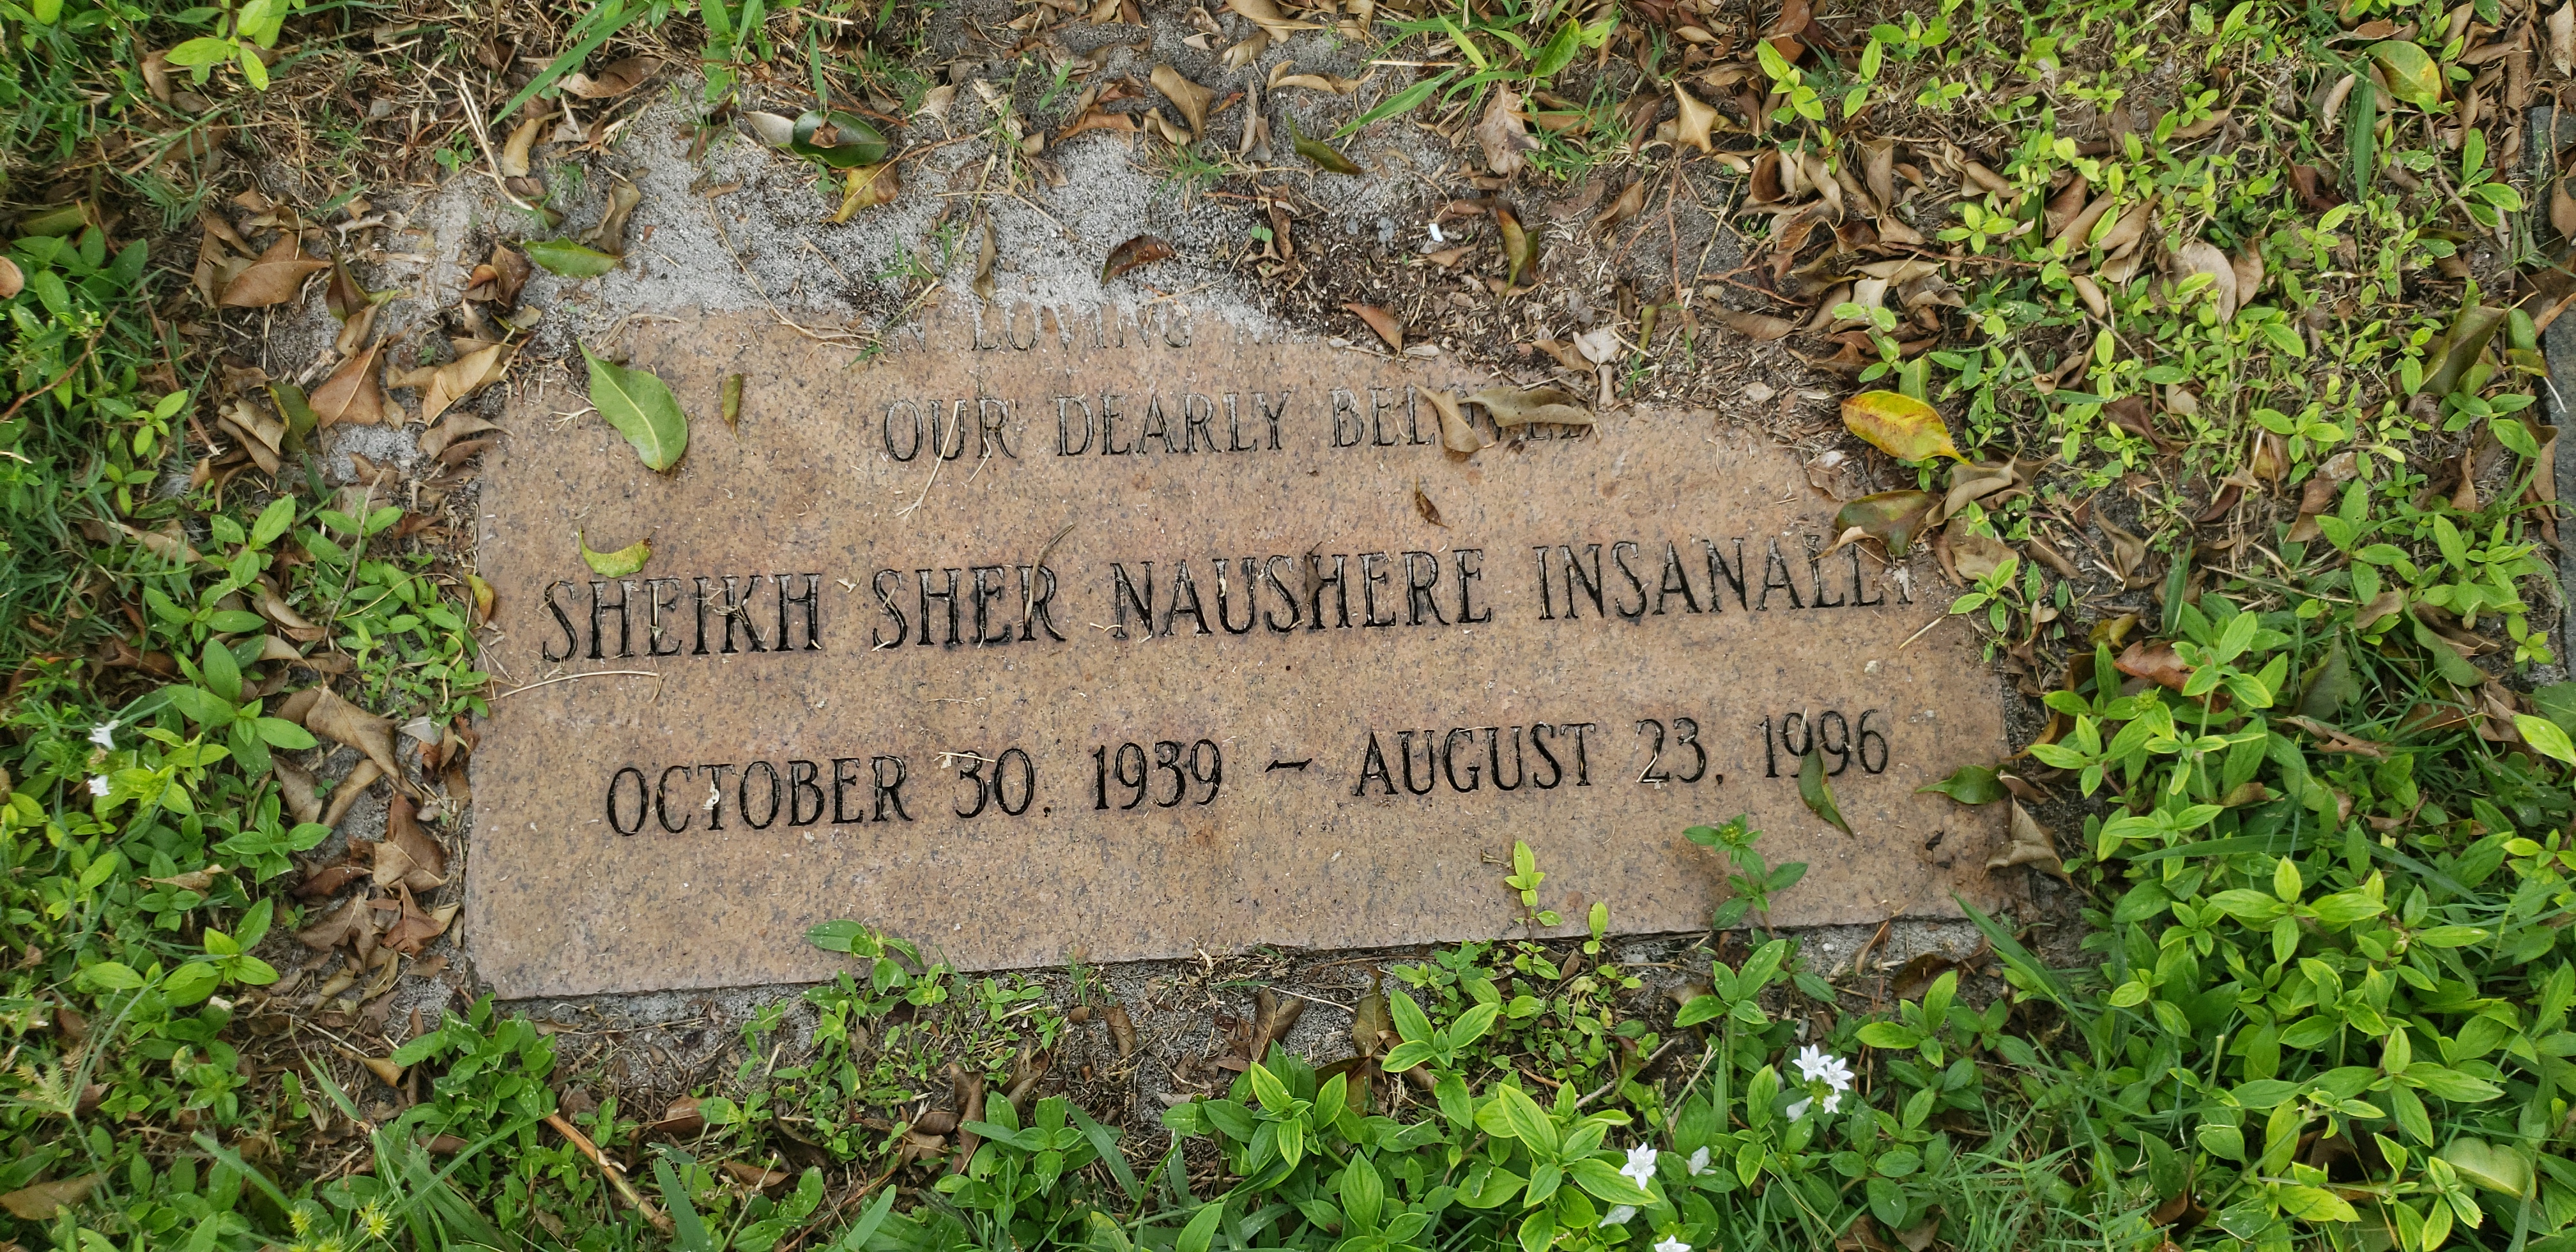 Sheikh Sher Naushere Insanally